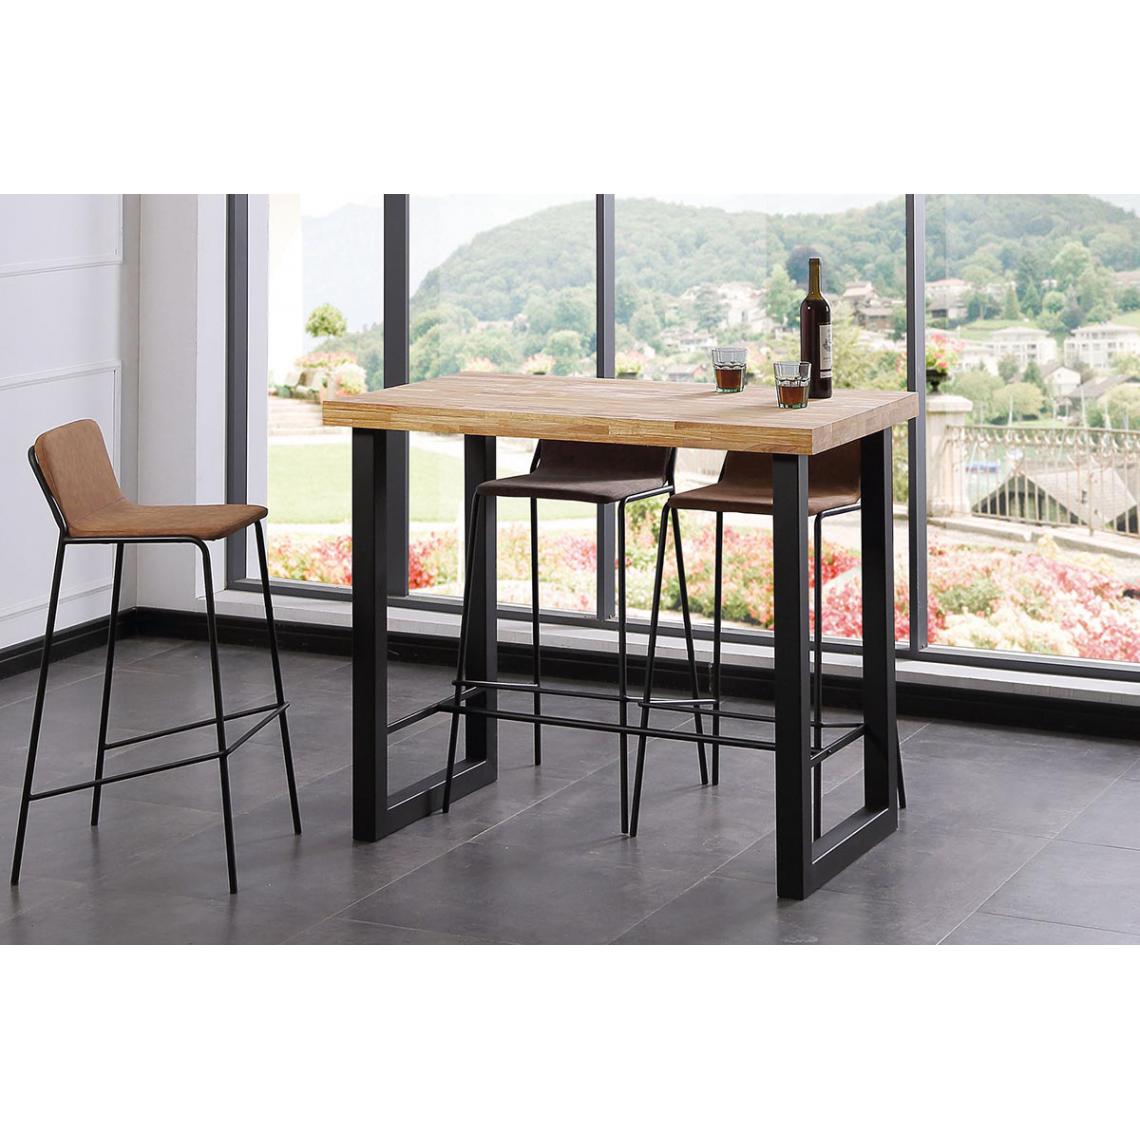 Pegane - Table haute en bois coloris chêne nordique / pieds noir - Longueur 120 x profondeur 70 x Hauteur 100 cm - Tables à manger